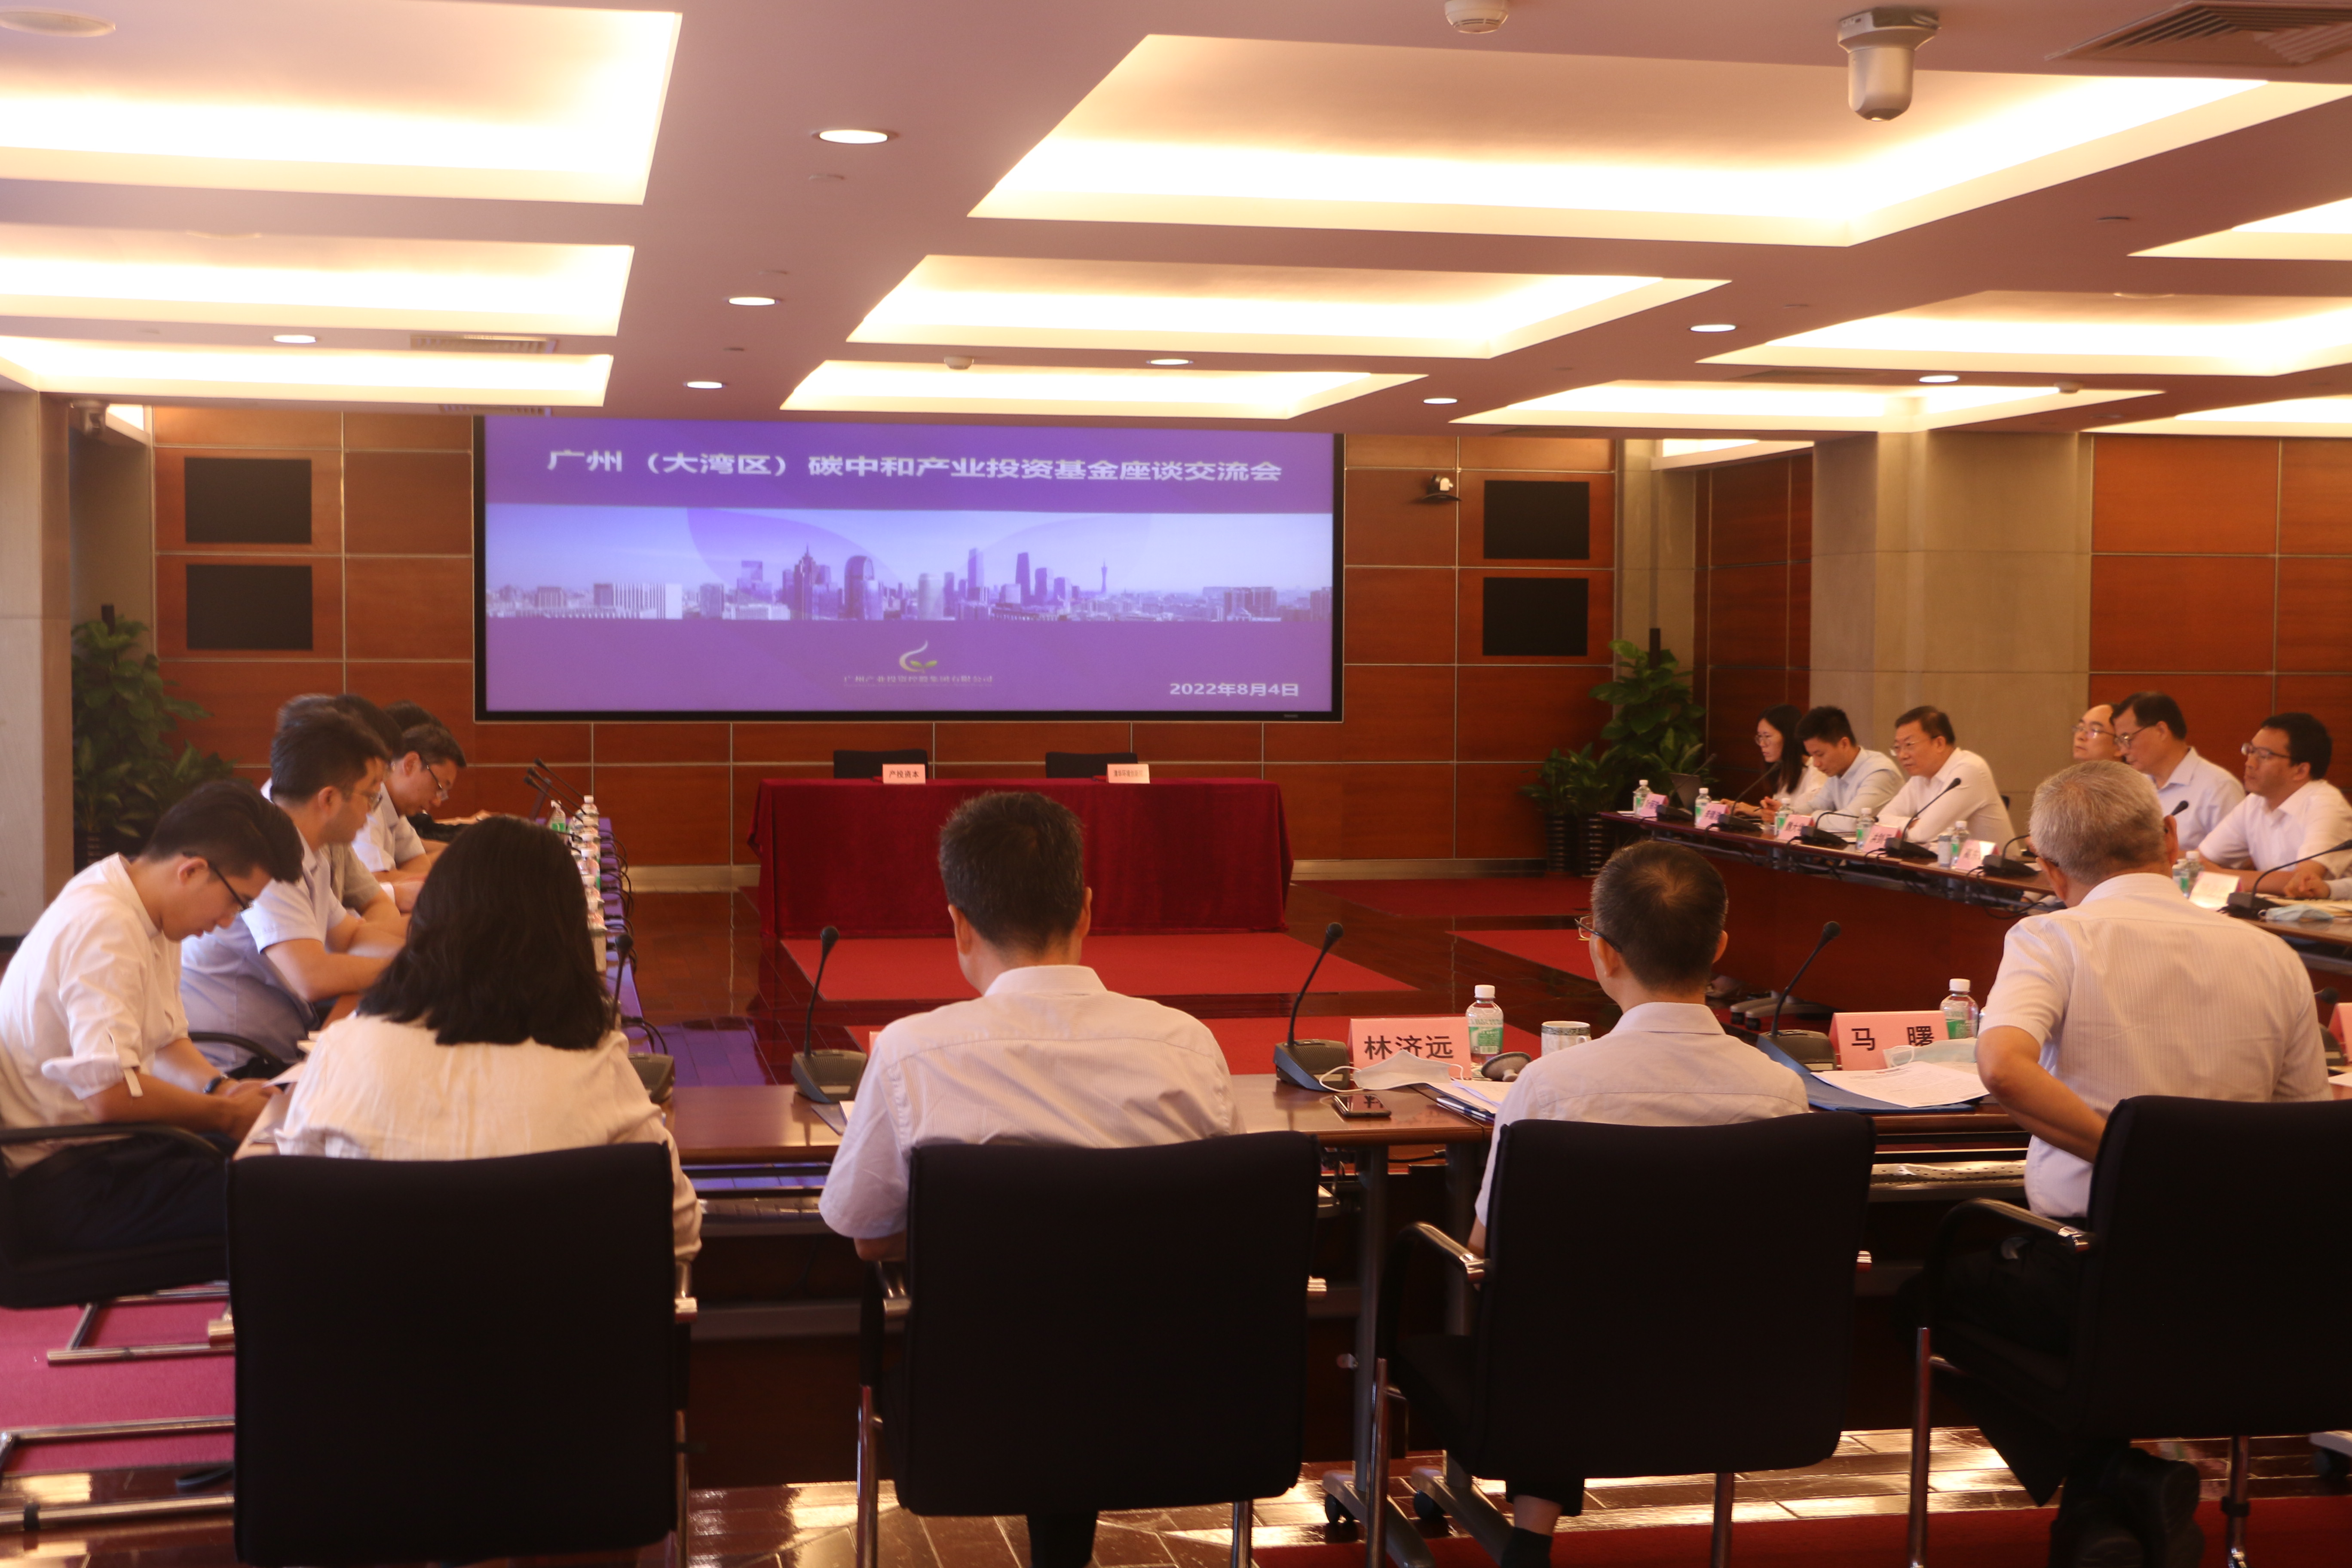 广州产投资本与清华苏州环境创新研究院签署碳中和合作协议